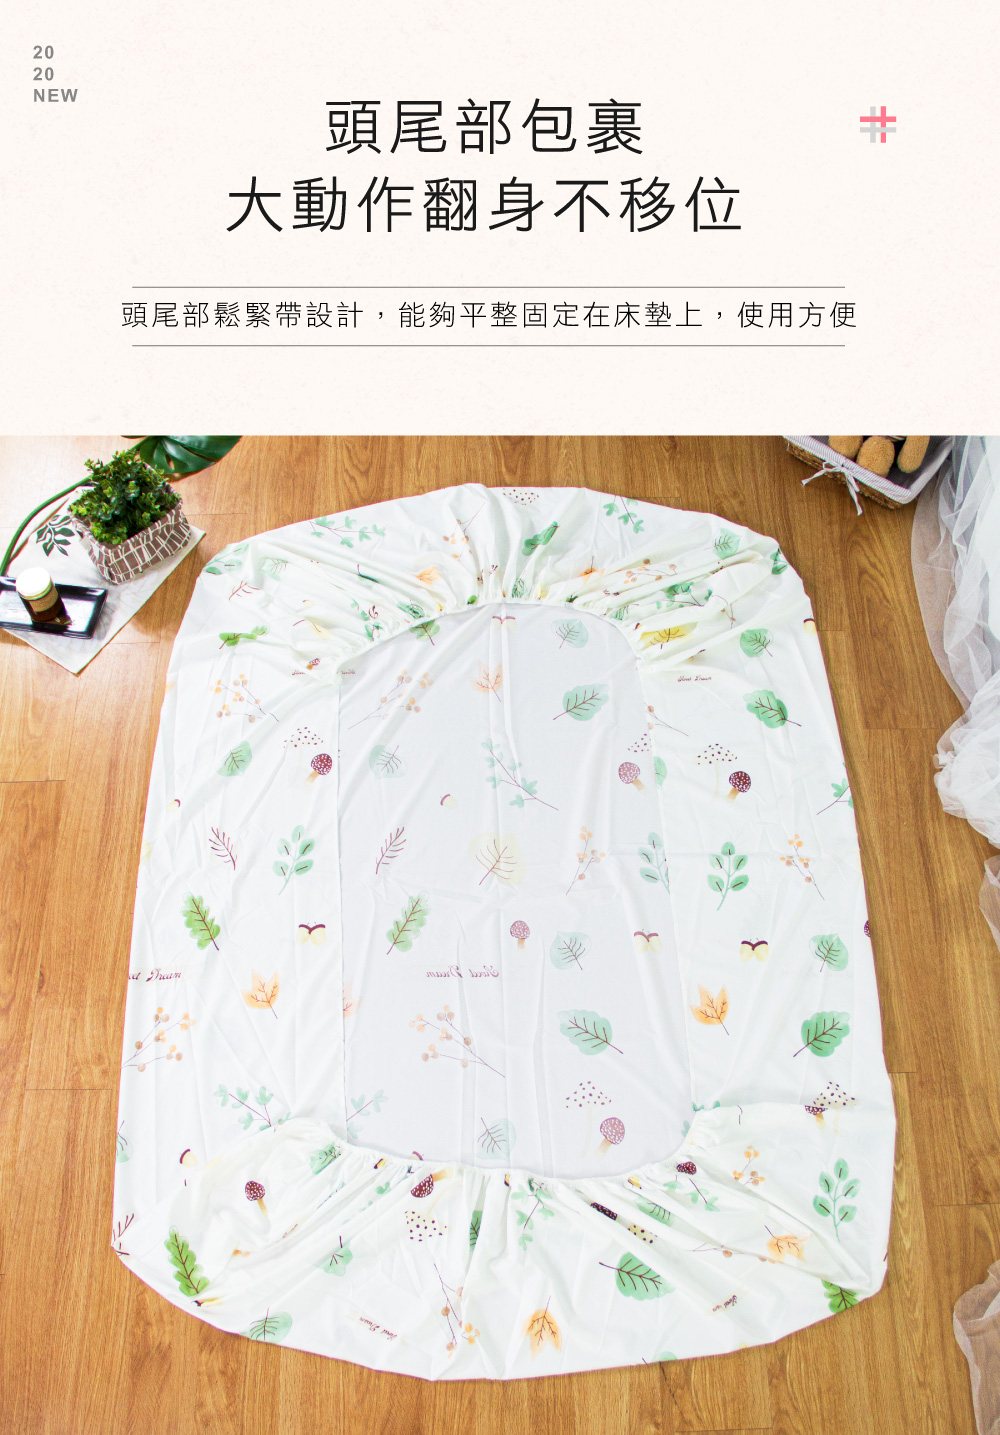 台灣製銀離子抗菌防蟎可水洗兩用被床包組 單人/雙人/加大均一價 夏天涼被 床單